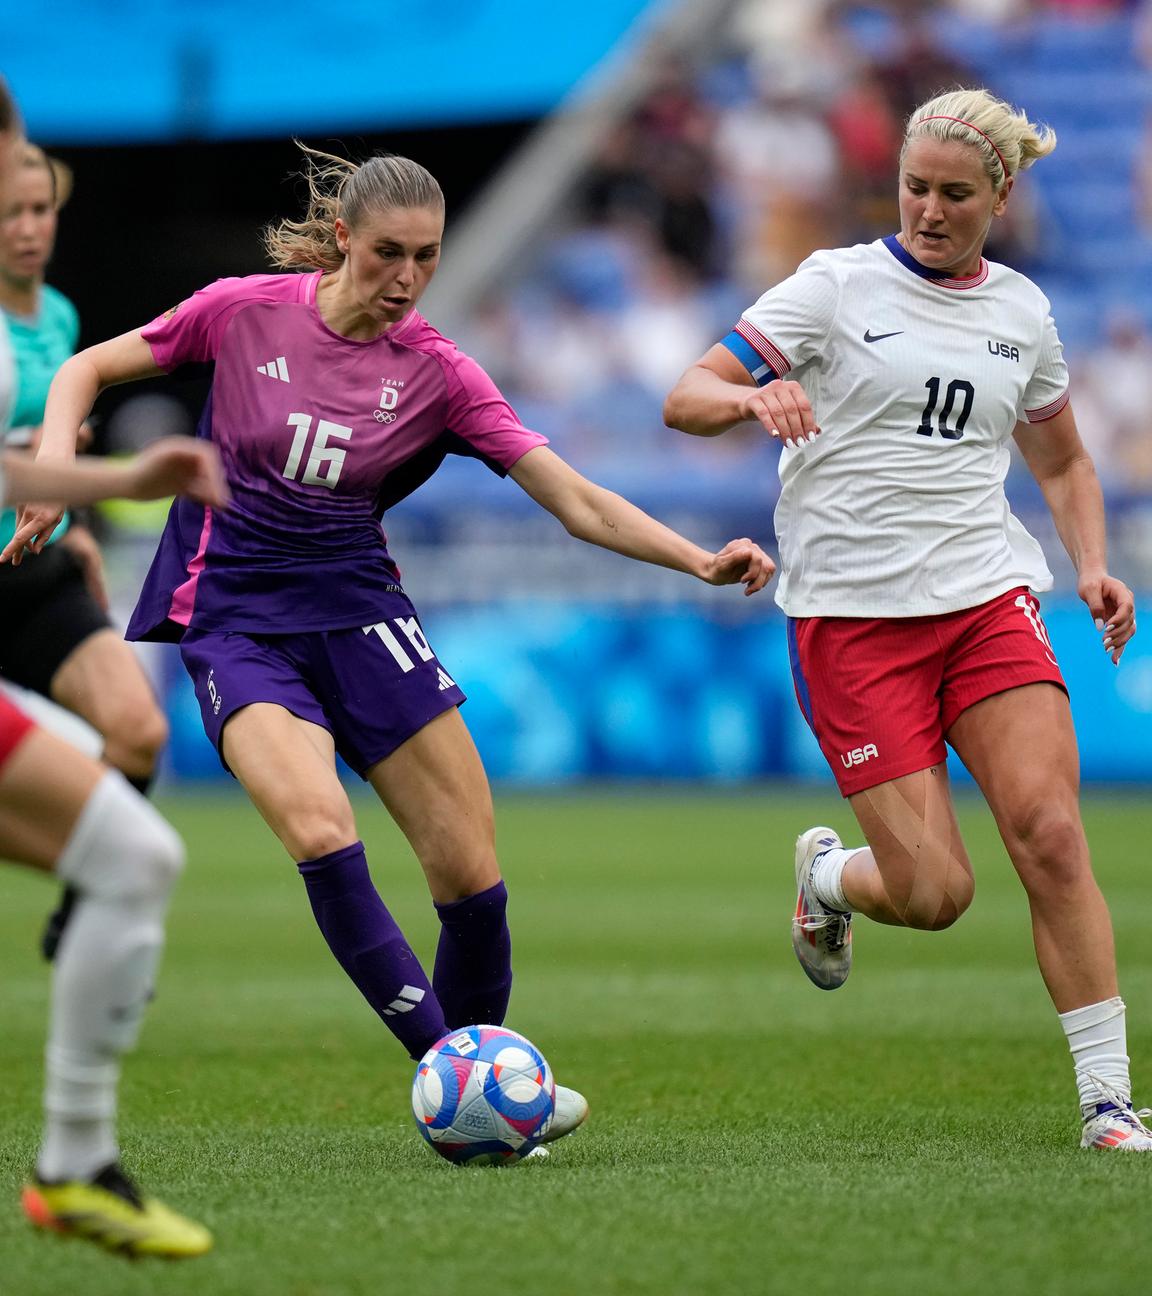 Die deutsche Frauennationalmannschaft spielt gegen die USA beim Fußball-Halbfinale.